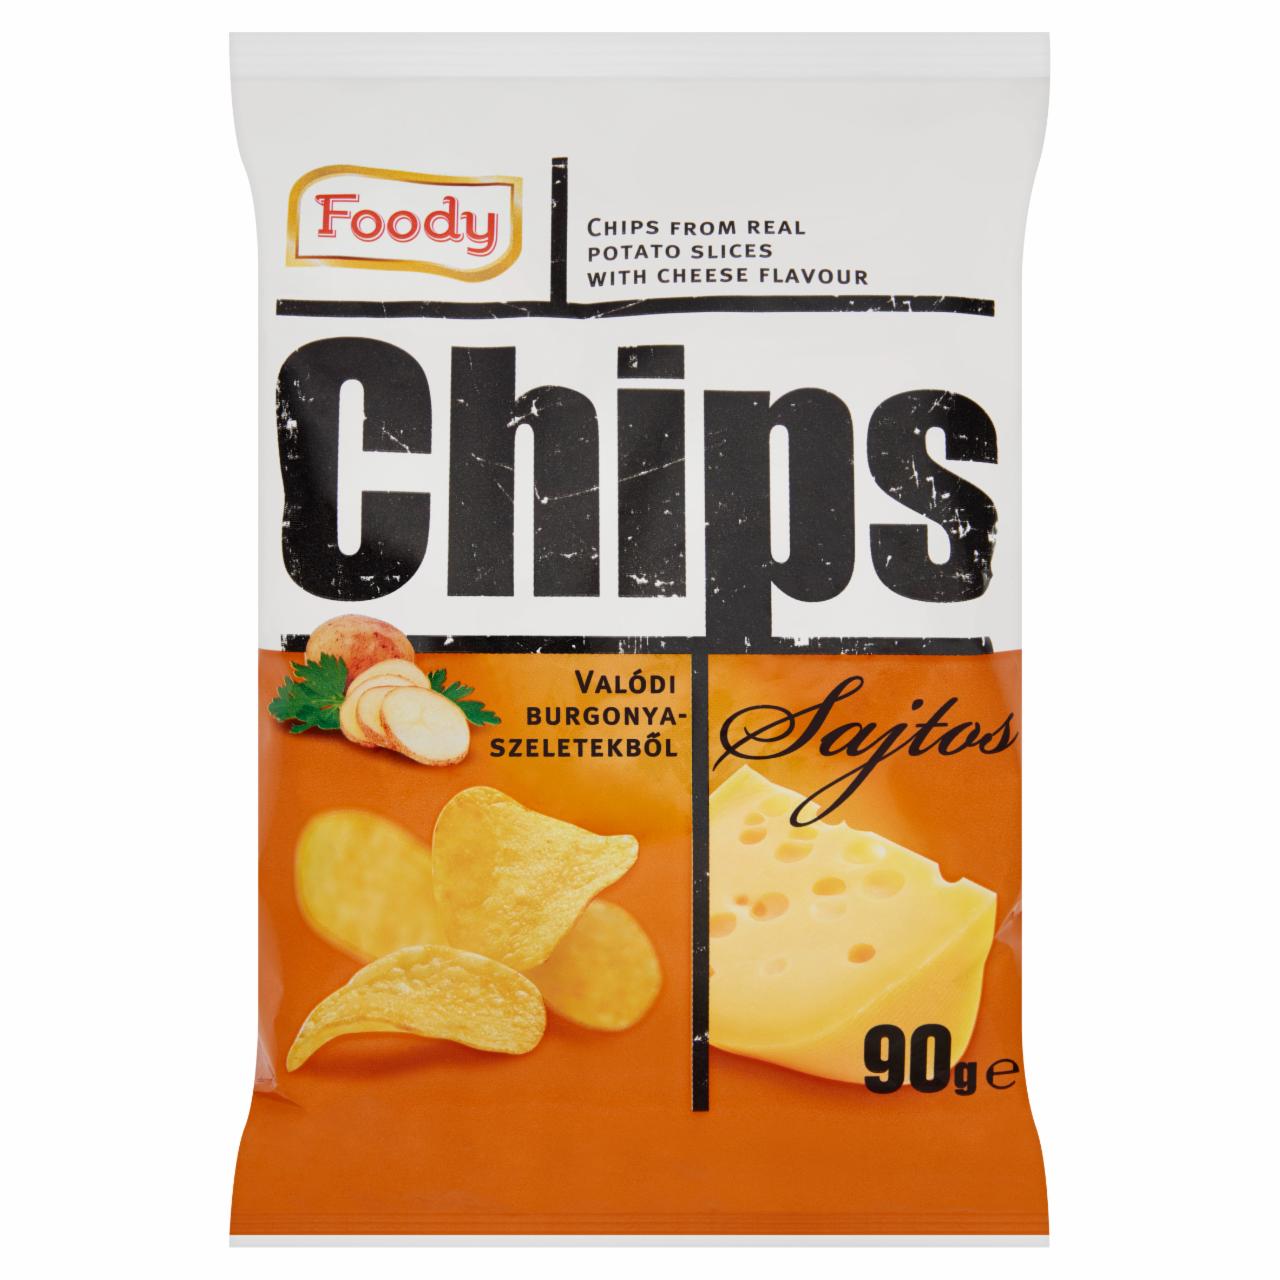 Képek - Foody sajtos chips valódi burgonyaszeletekből 90 g